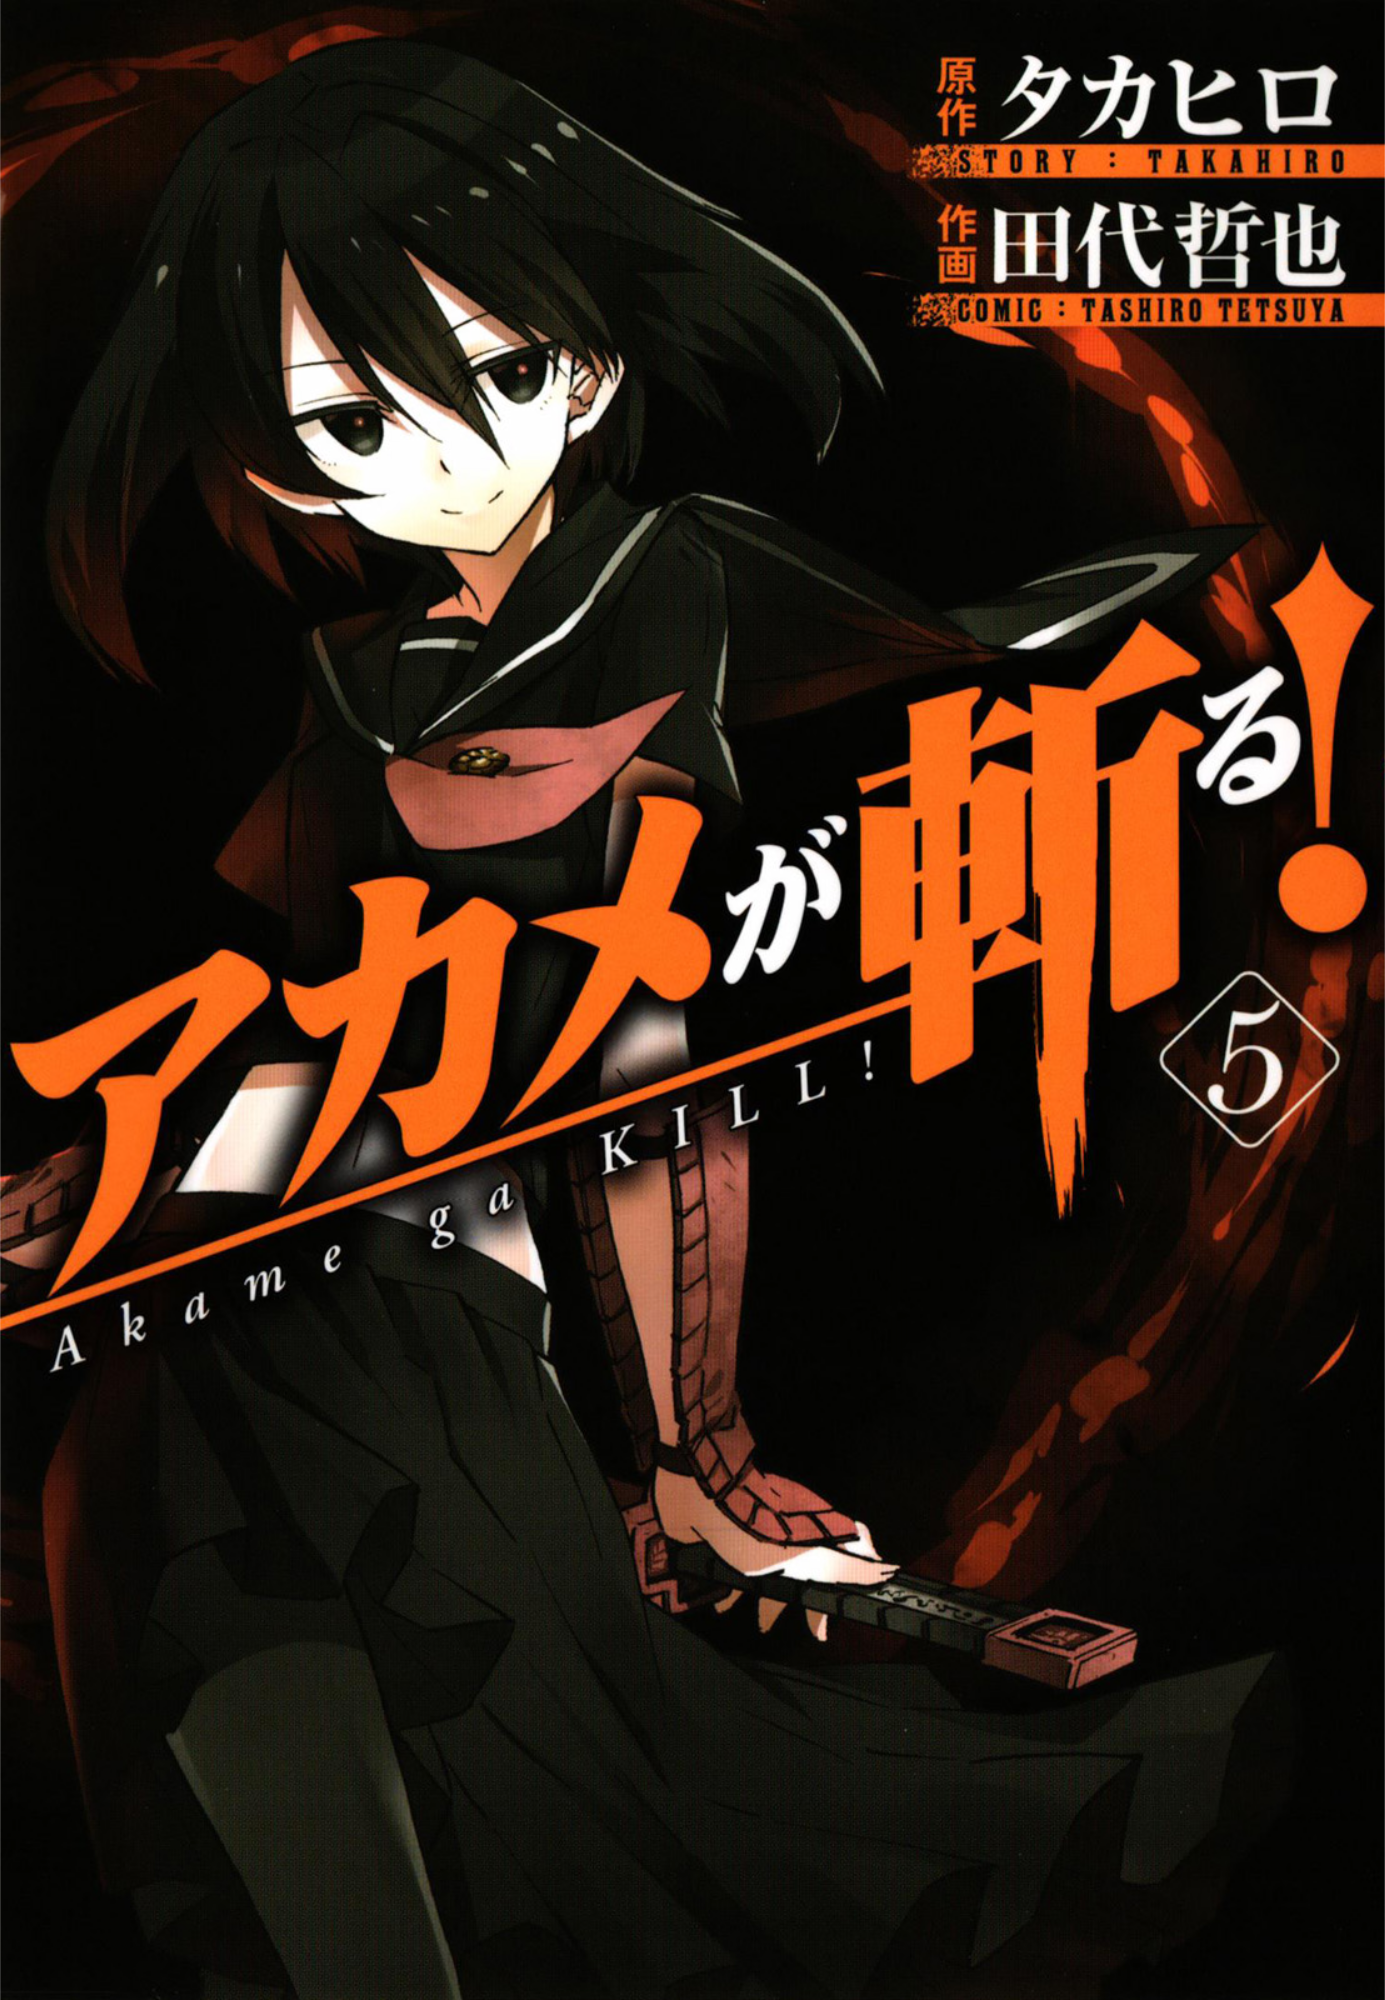 Akame ga KILL! ZERO, Vol. 5 ebook by Takahiro - Rakuten Kobo